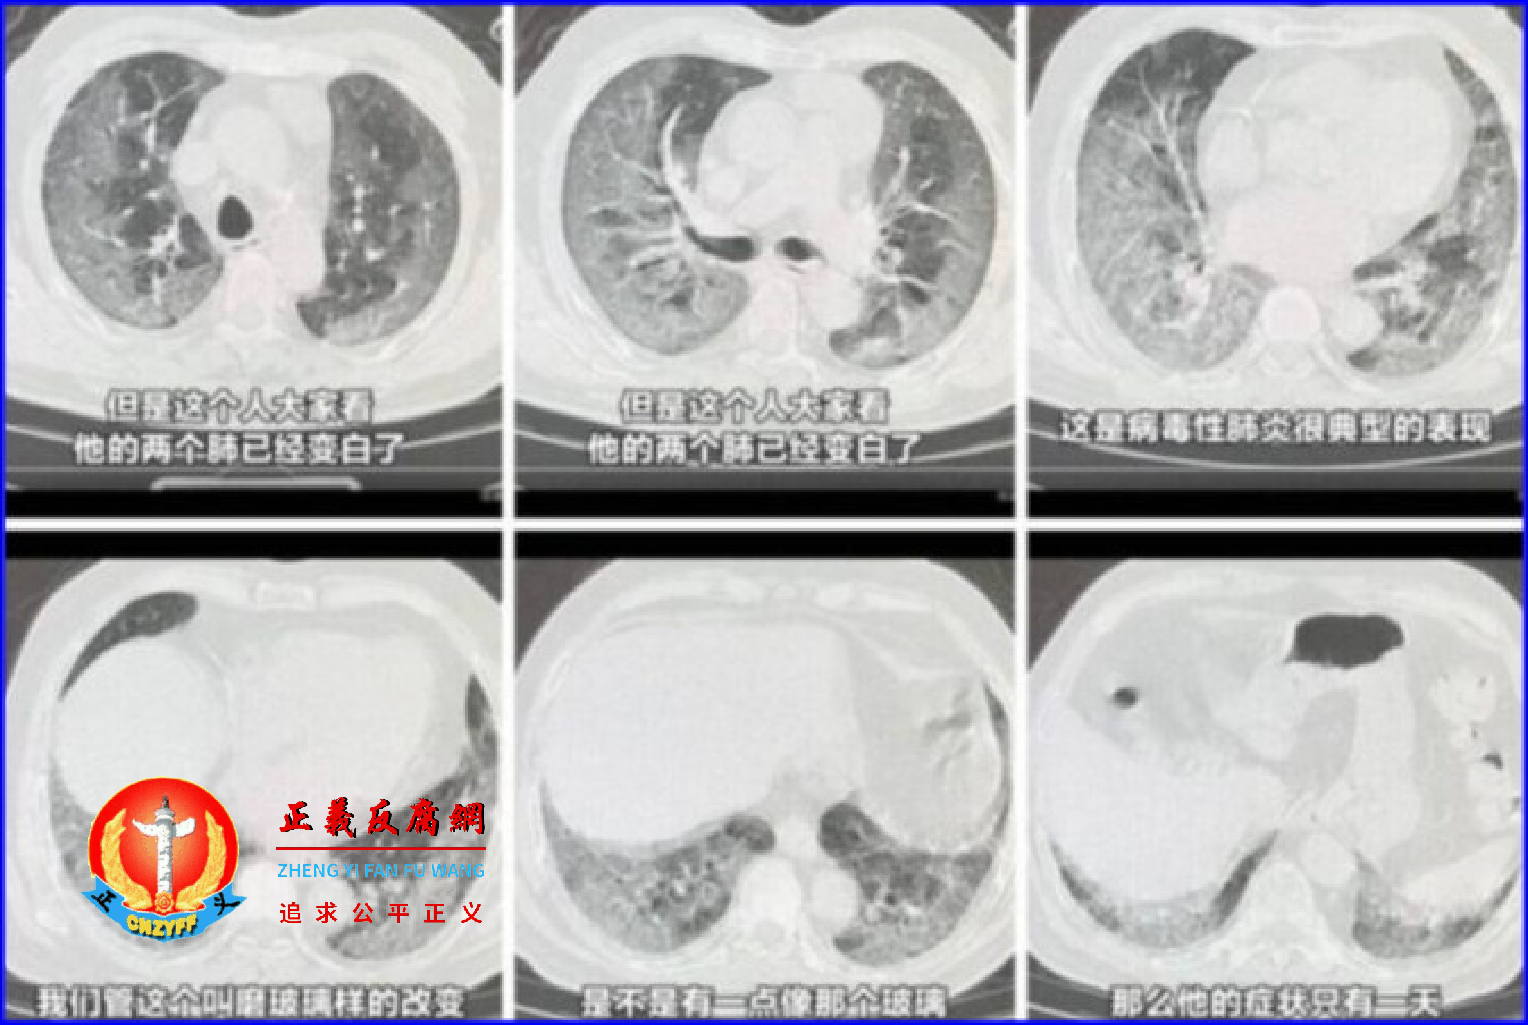 3年前武汉疫情爆发时的典型症状“白肺”，近期似乎又开始在中国大量出现。.png